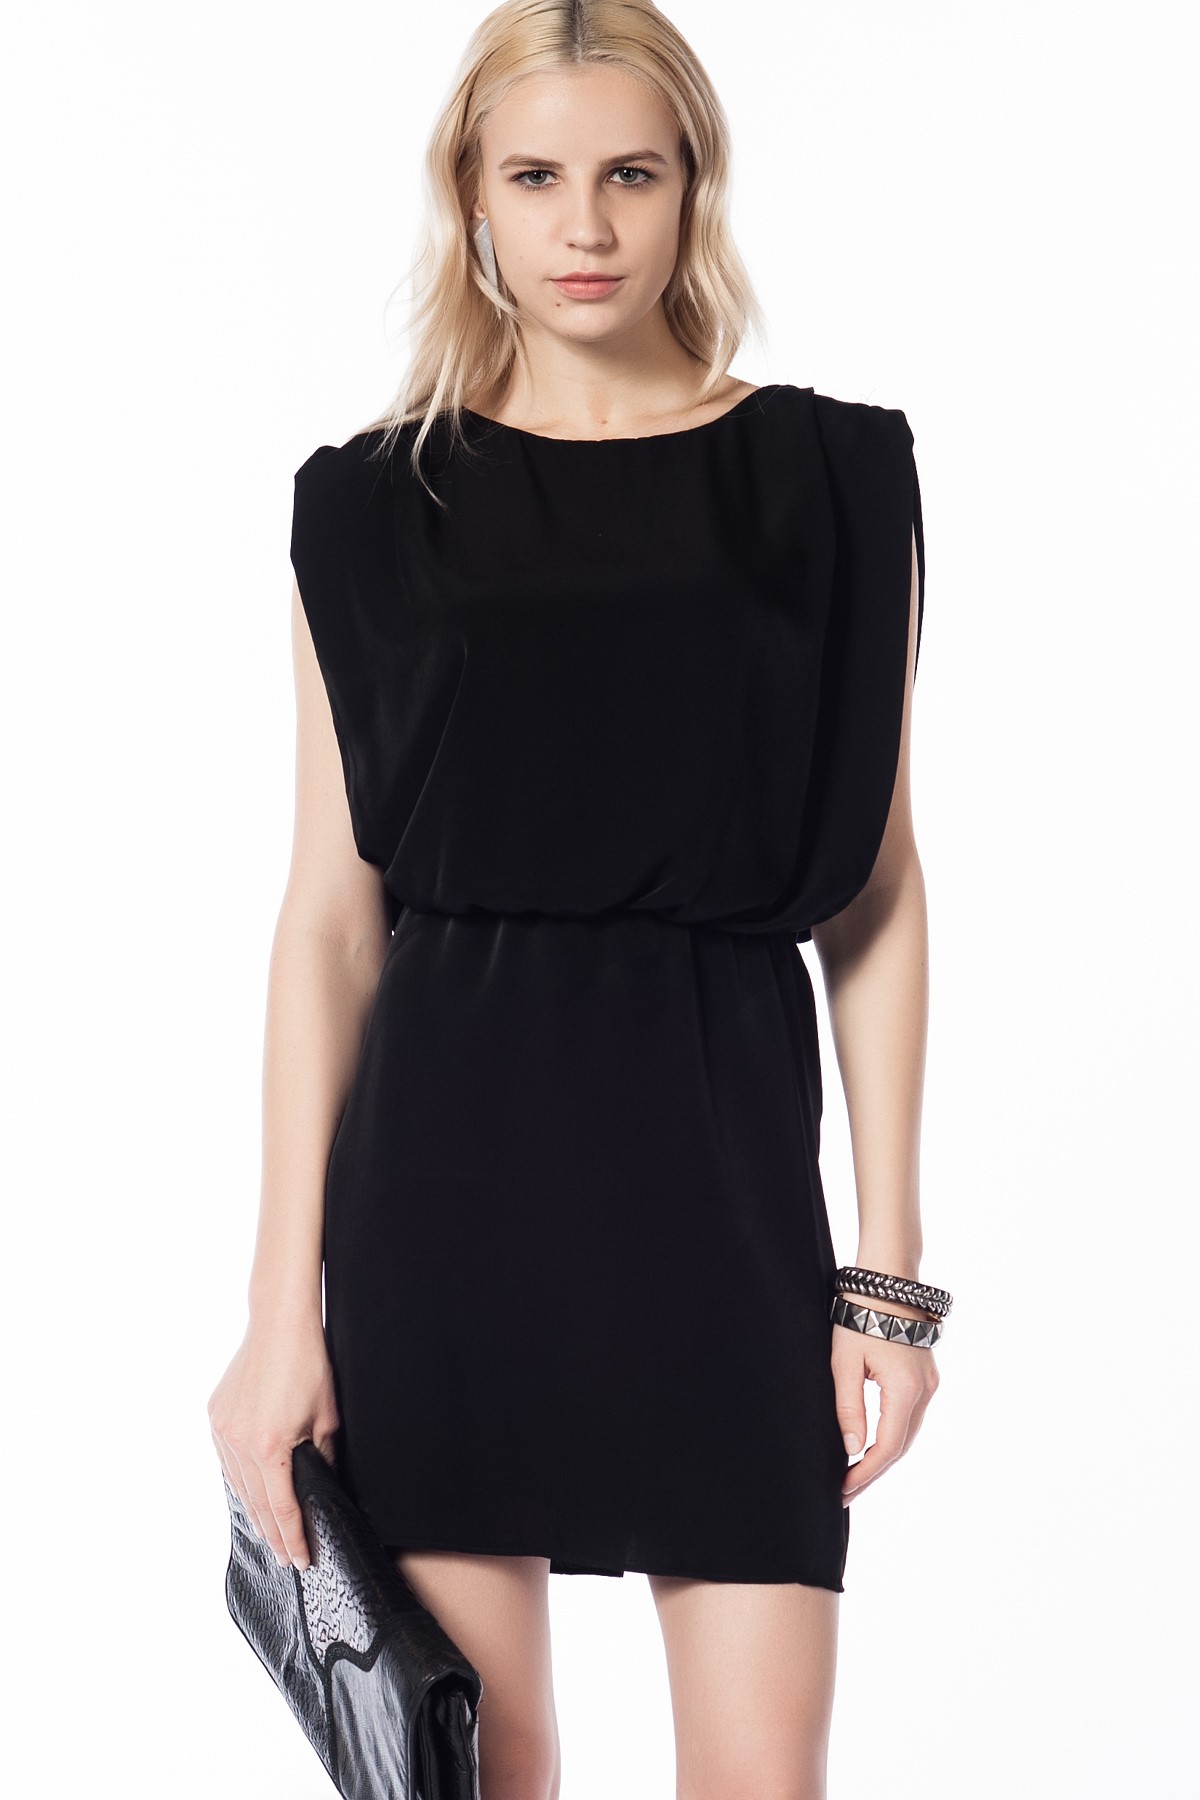 Kolsuz Siyah Mini Zara 2015 Elbise Modelleri